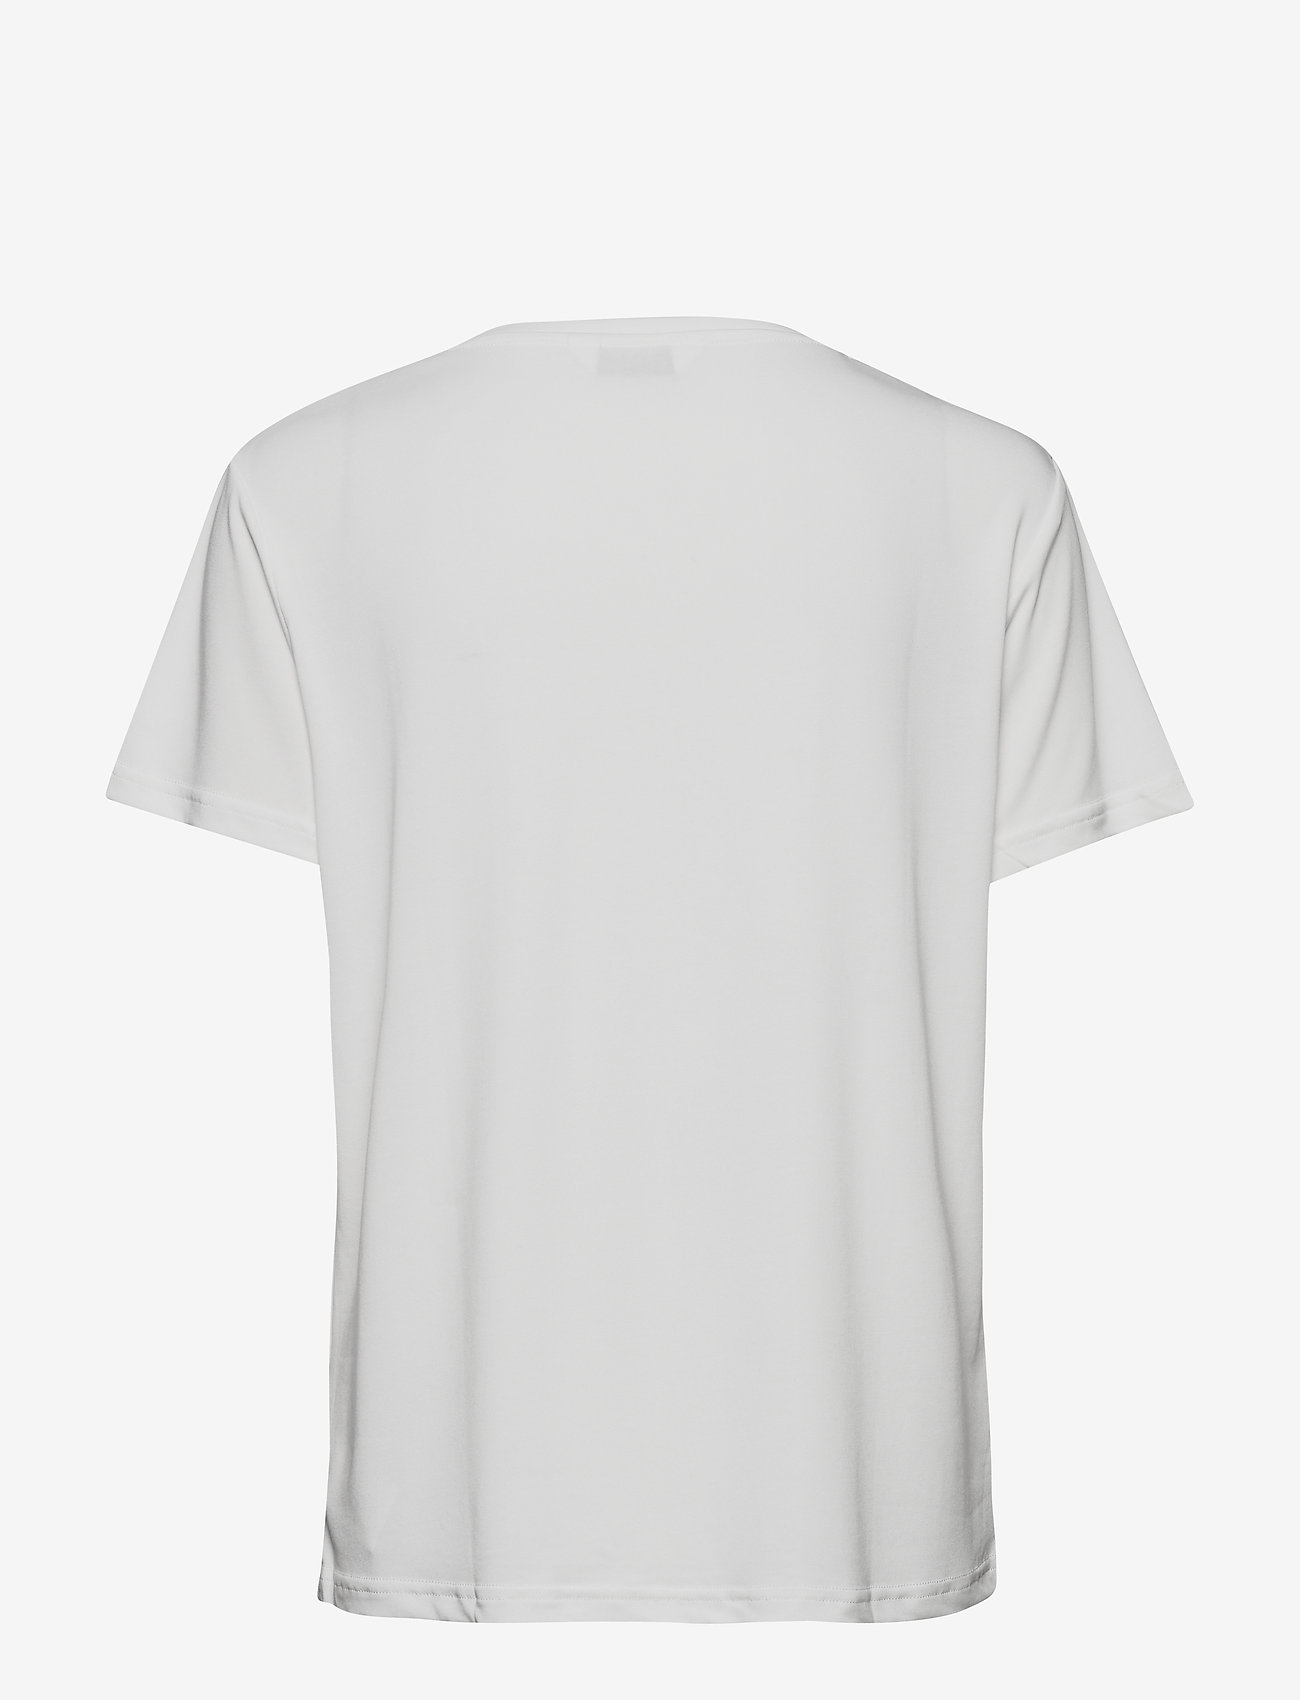 SPARKZ COPENHAGEN - PETTI V NECK TEE - t-shirts - off white - 1